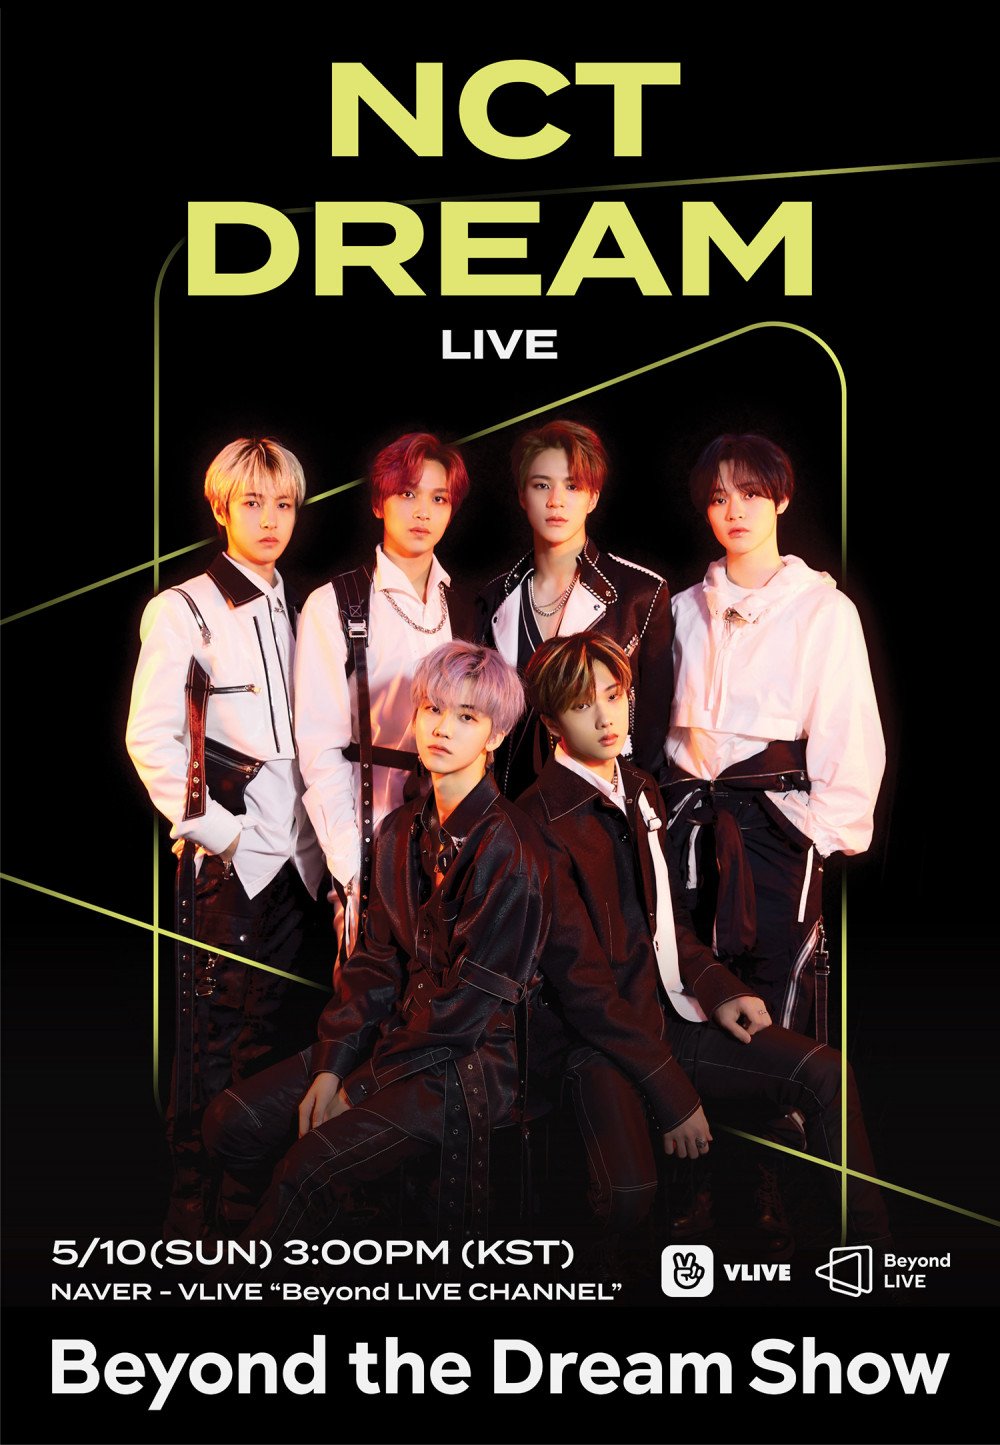 NCT DREAM выпустили плакат в качестве третьего артиста концертной серии SM Entertainment «Beyond Live»